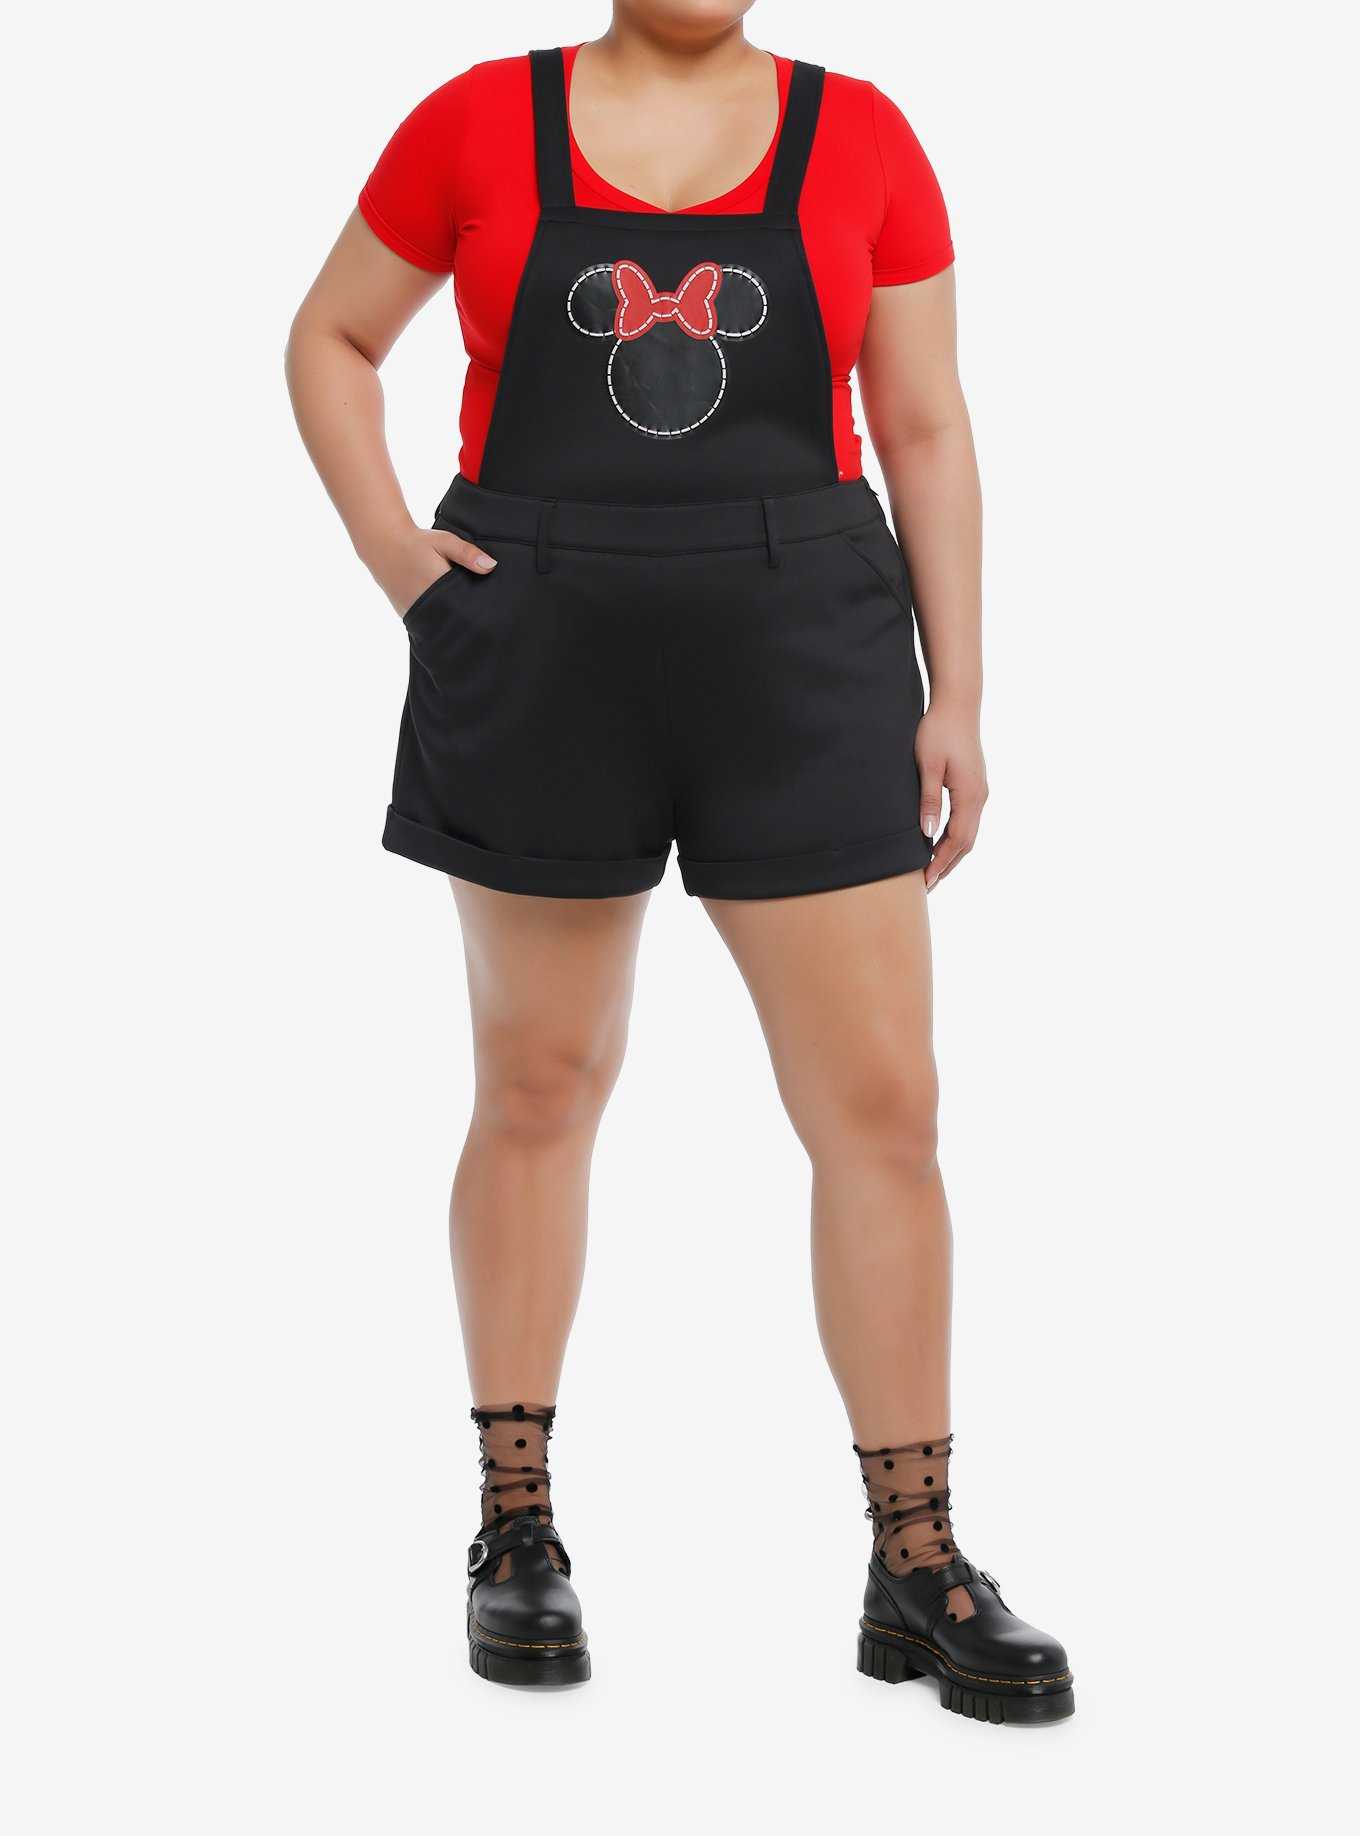 Disney Minnie Mouse Red Bow Scuba Shortalls Plus Size, , hi-res